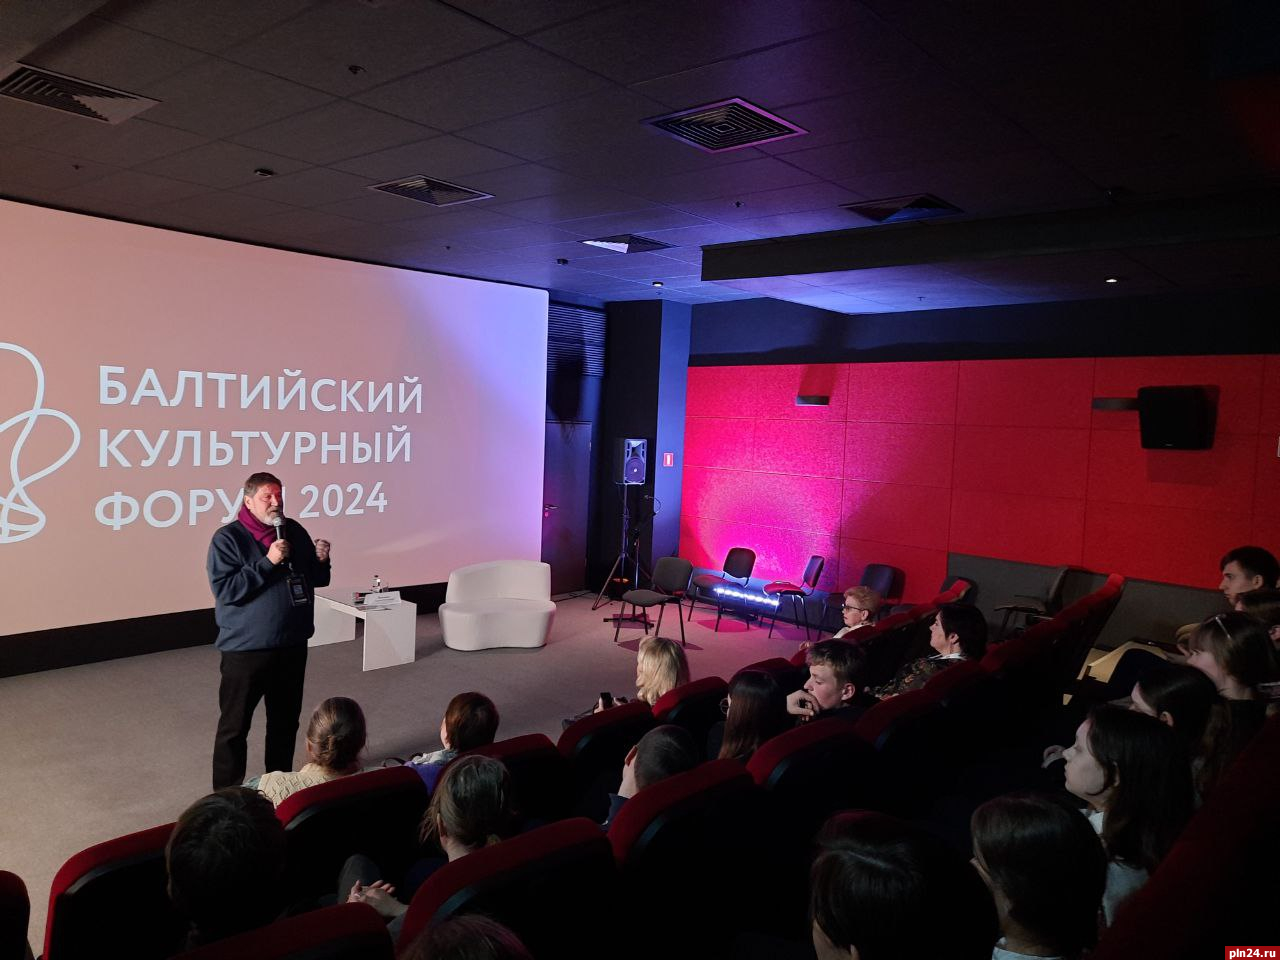 О Курбатове-друге и Курбатове-собеседнике говорил директор «Михайловского» на встрече с калининградской молодёжью